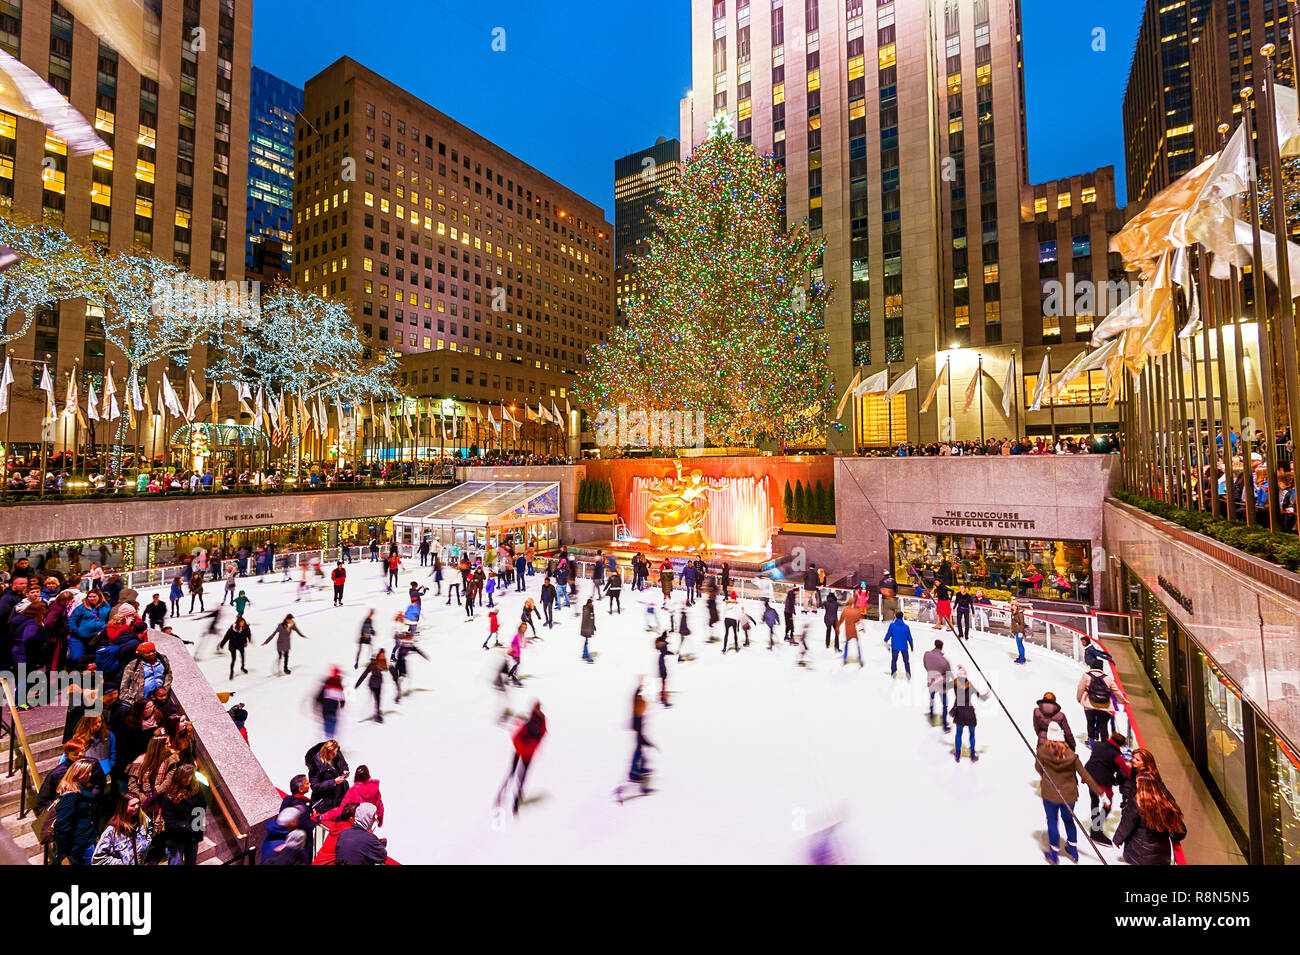 Weihnachten New York Rockefeller Plaza Eislaufbahn Weihnachtsbaum Stockfoto